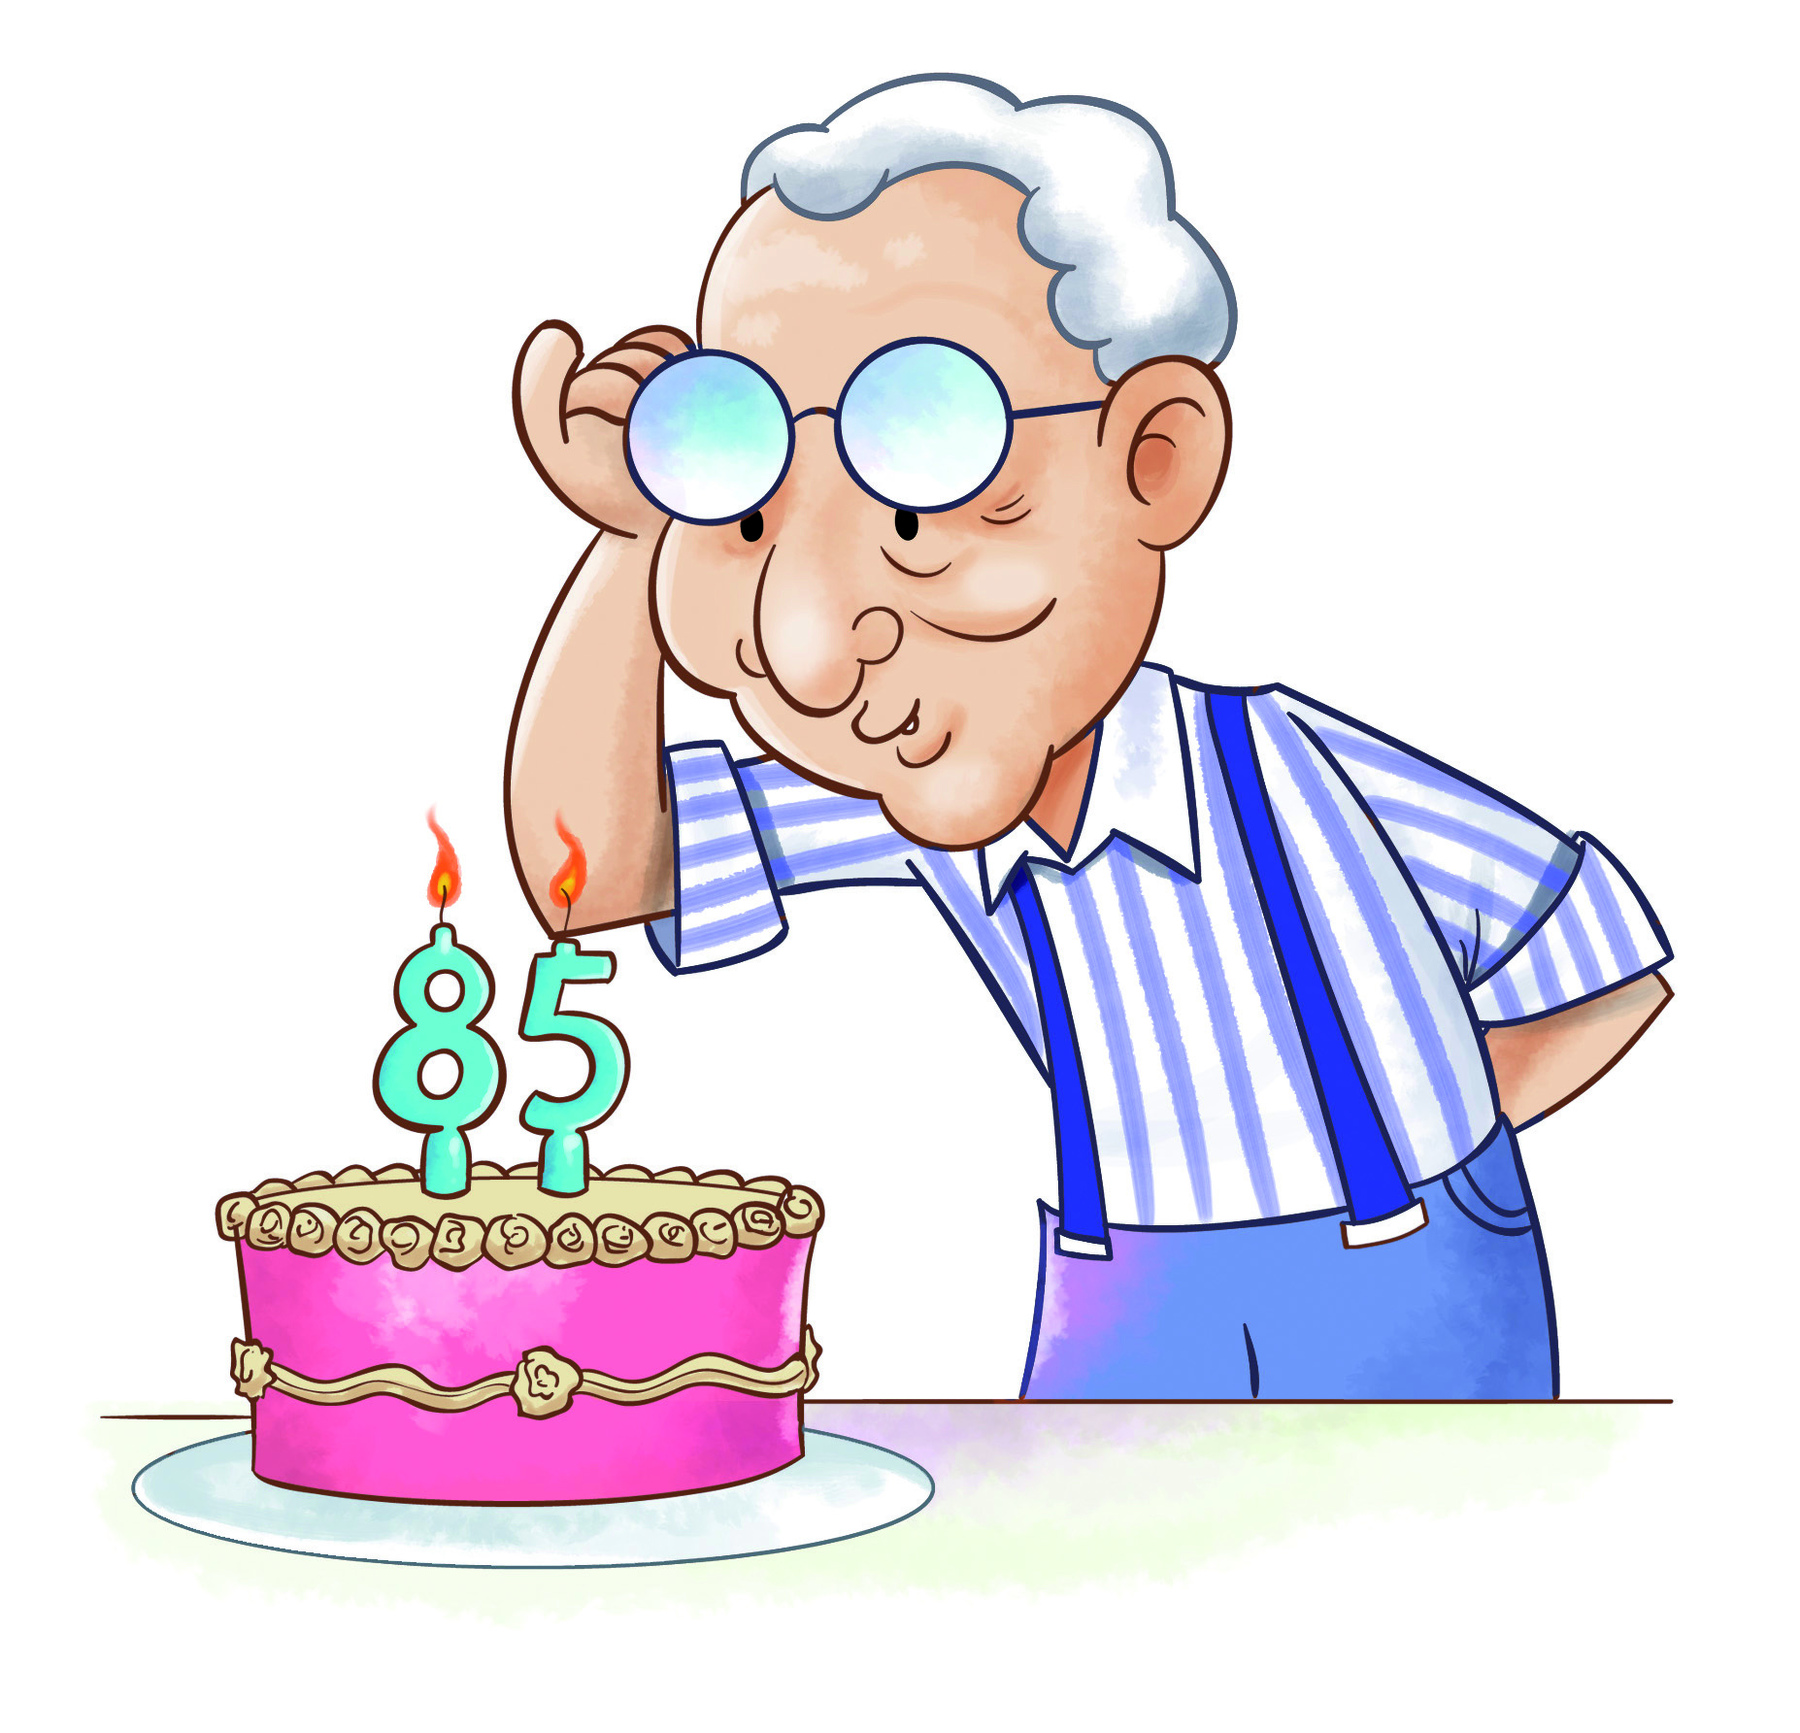 Ilustração. Idoso branco de cabelos grisalhos, camisa listrada branca e azul listrada e suspensório. Ele levanta os óculos e olha para um bolo redondo na cor rosa a sua frente com vela de 85 anos acesa.